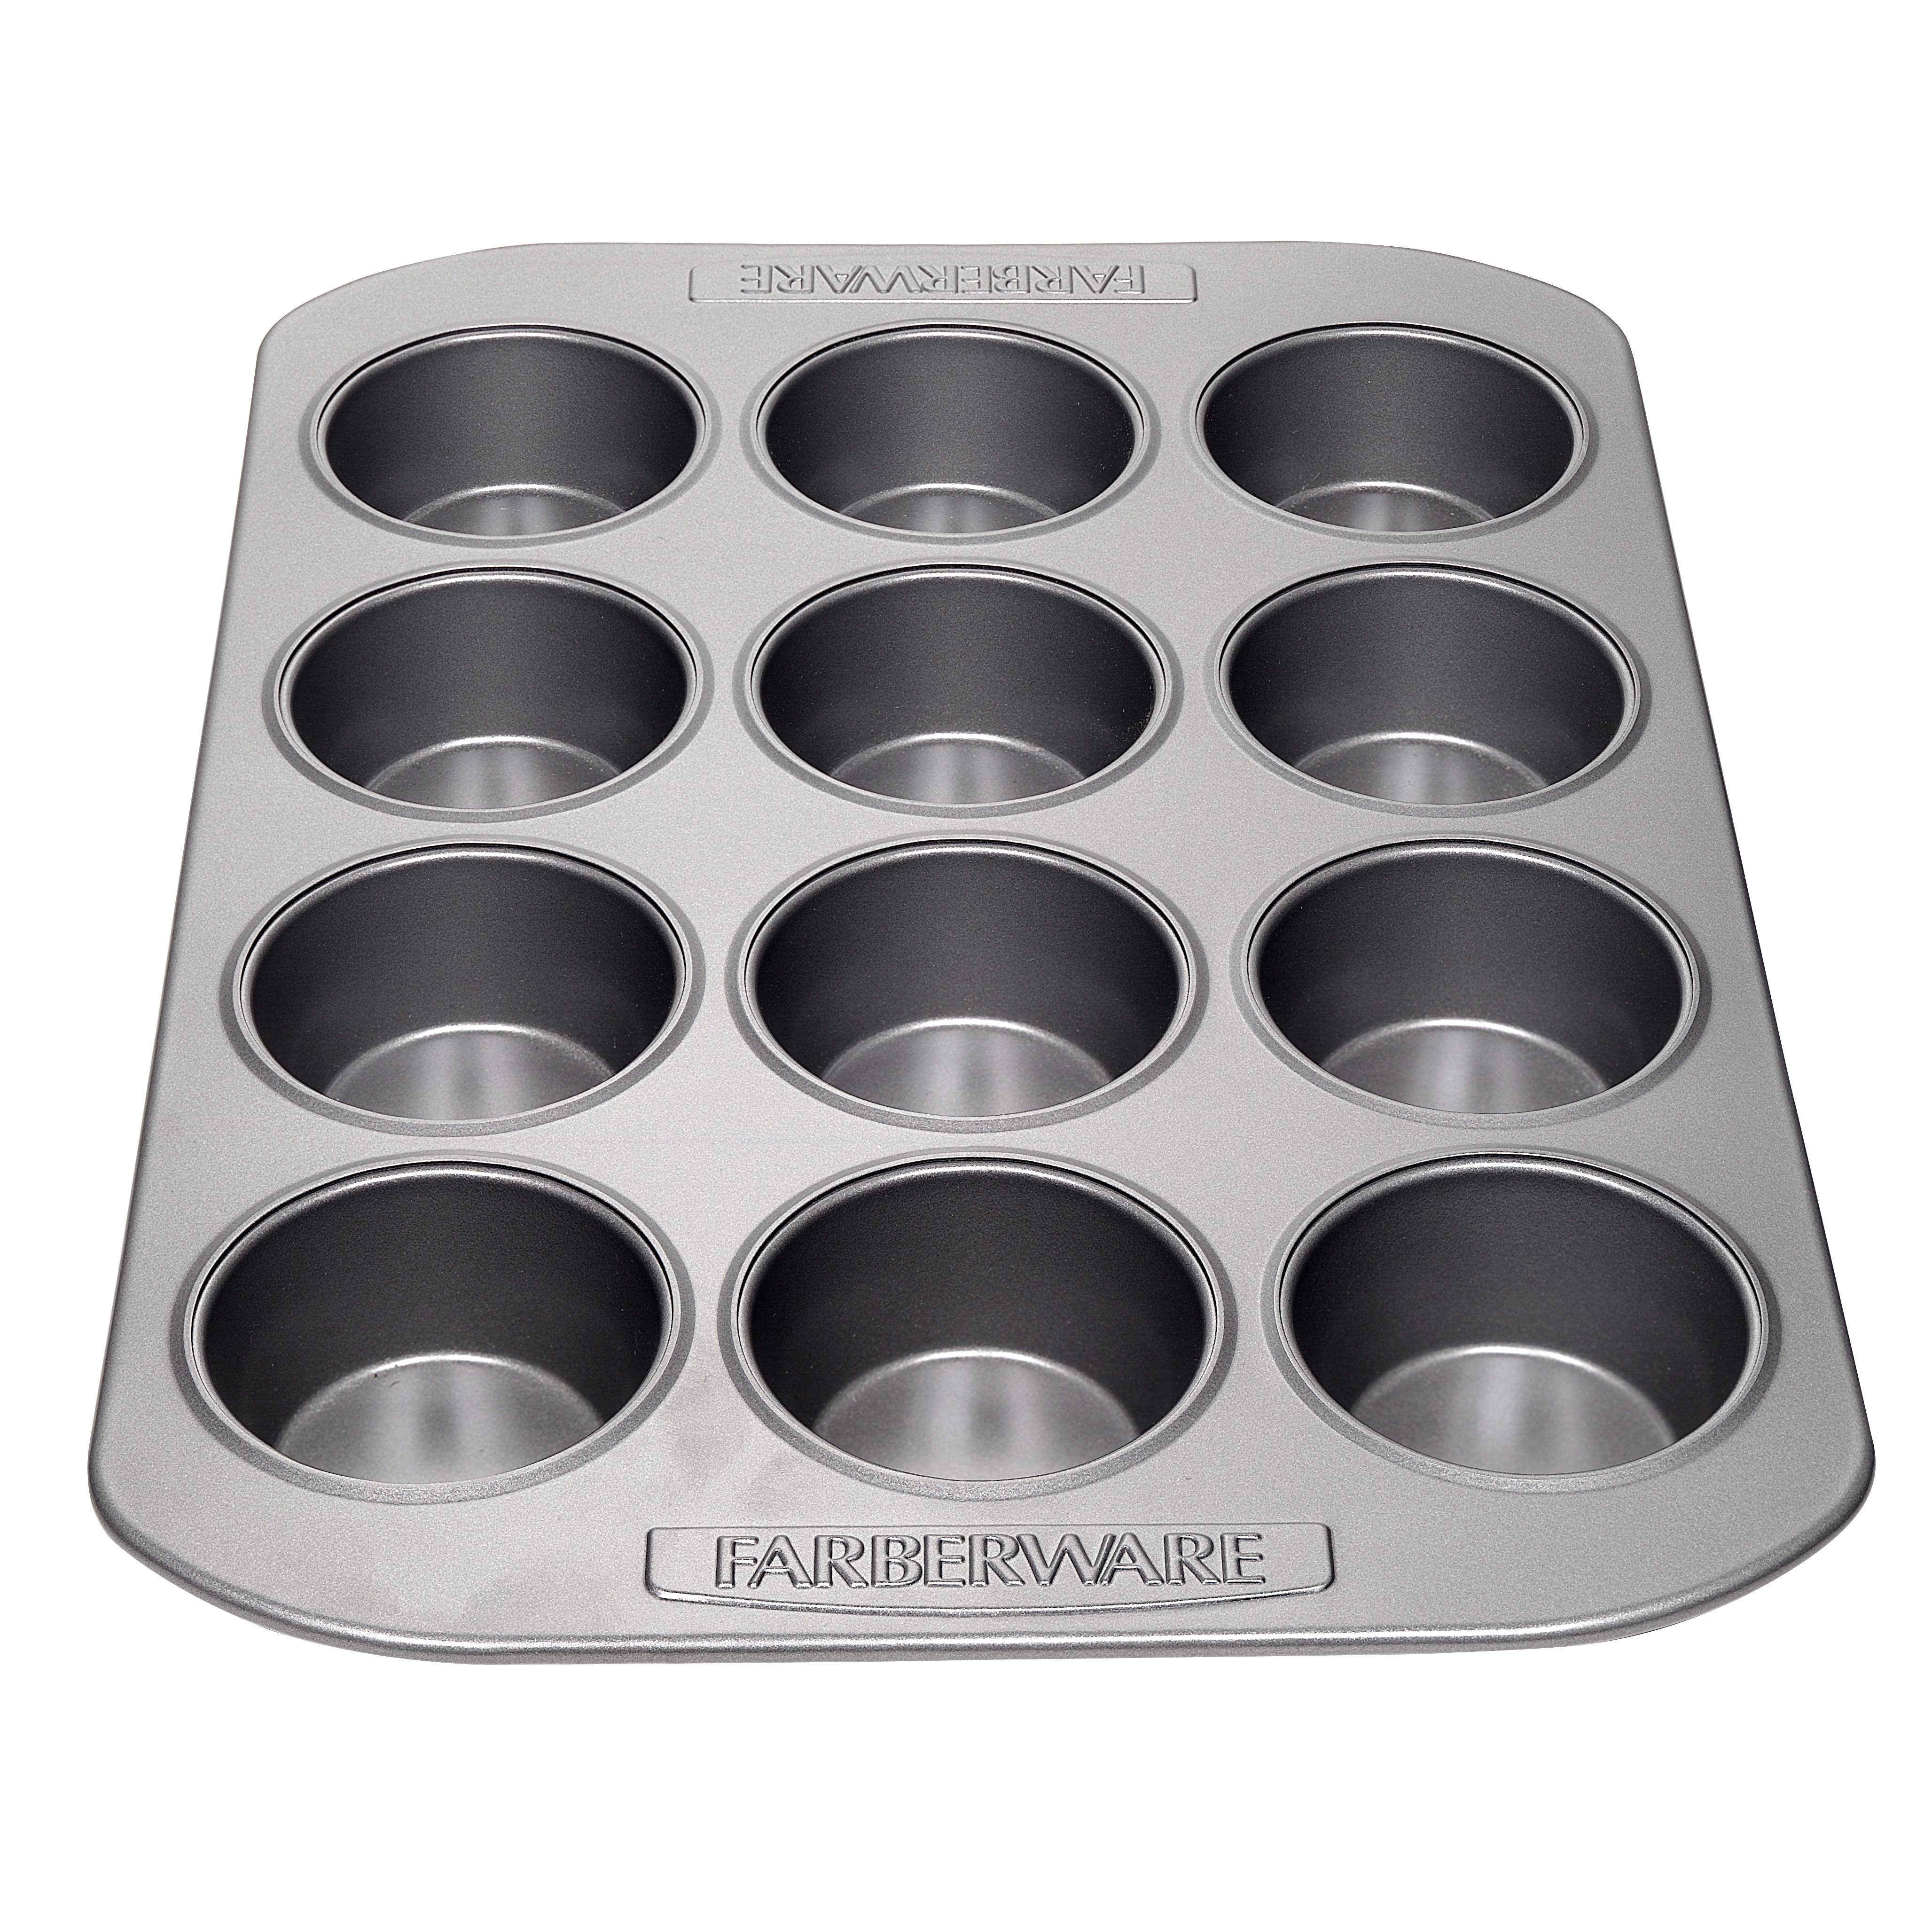 Farberware 12-Cup Bakeware Nonstick Muffin Pan,Gray - image 1 of 7